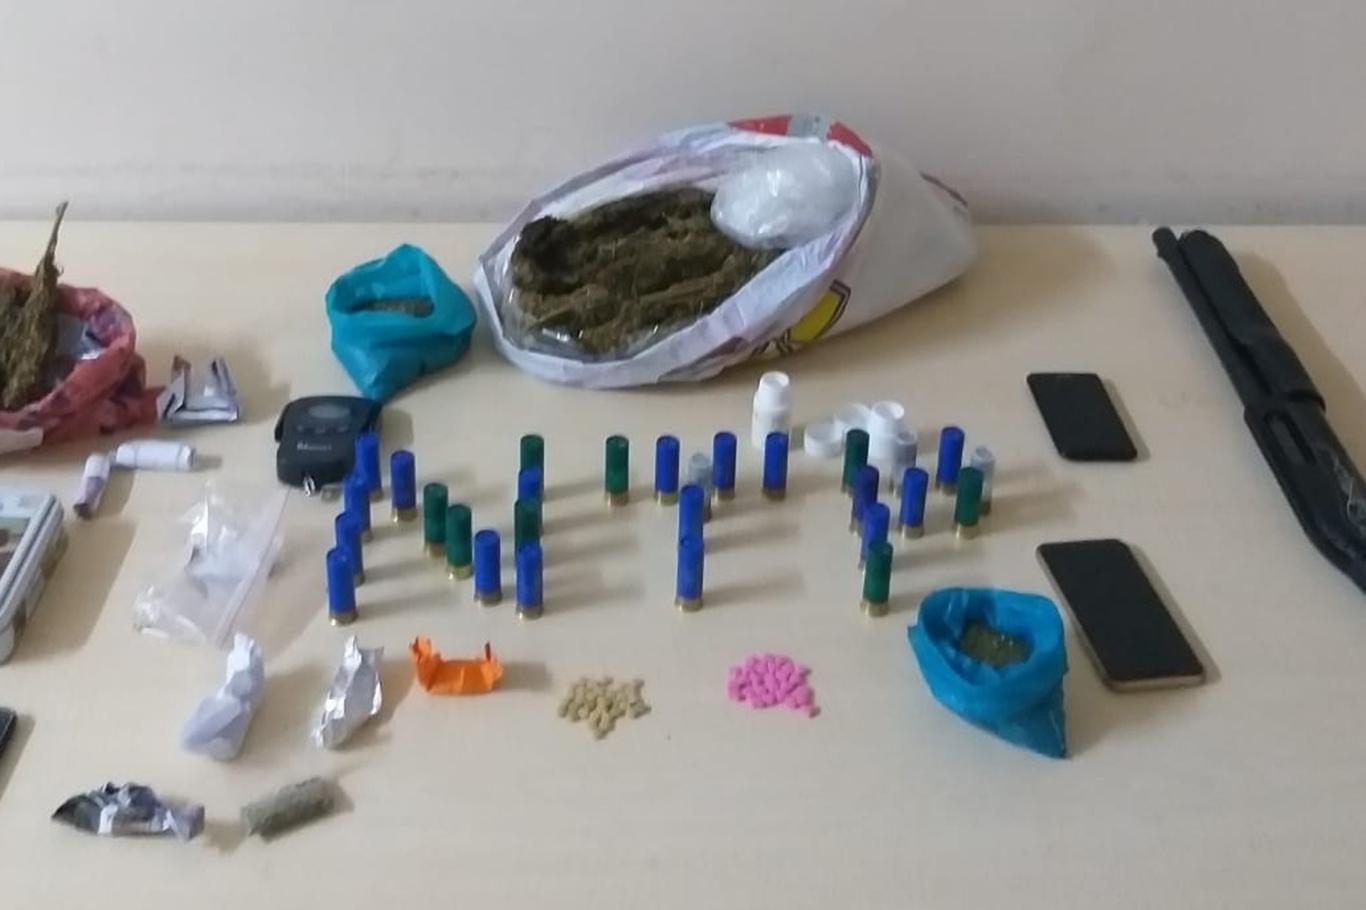 Gaziantep'te uyuşturucu operasyonu: 9 gözaltı